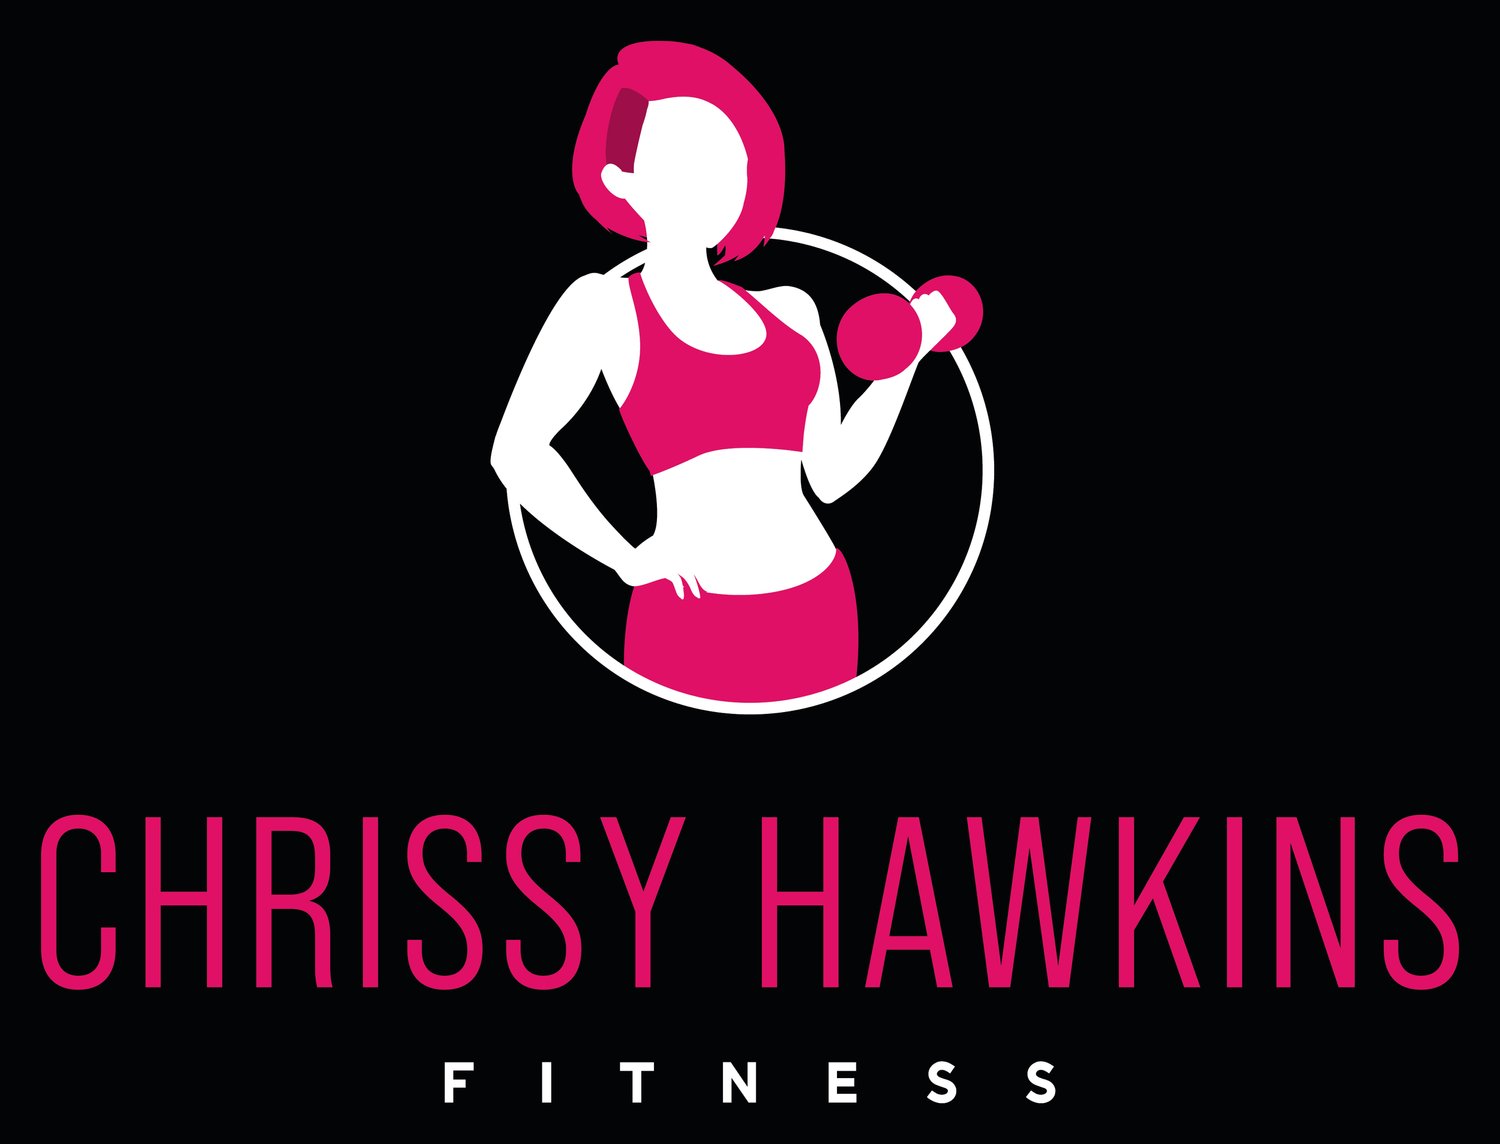 Chrissy Hawkins fitness